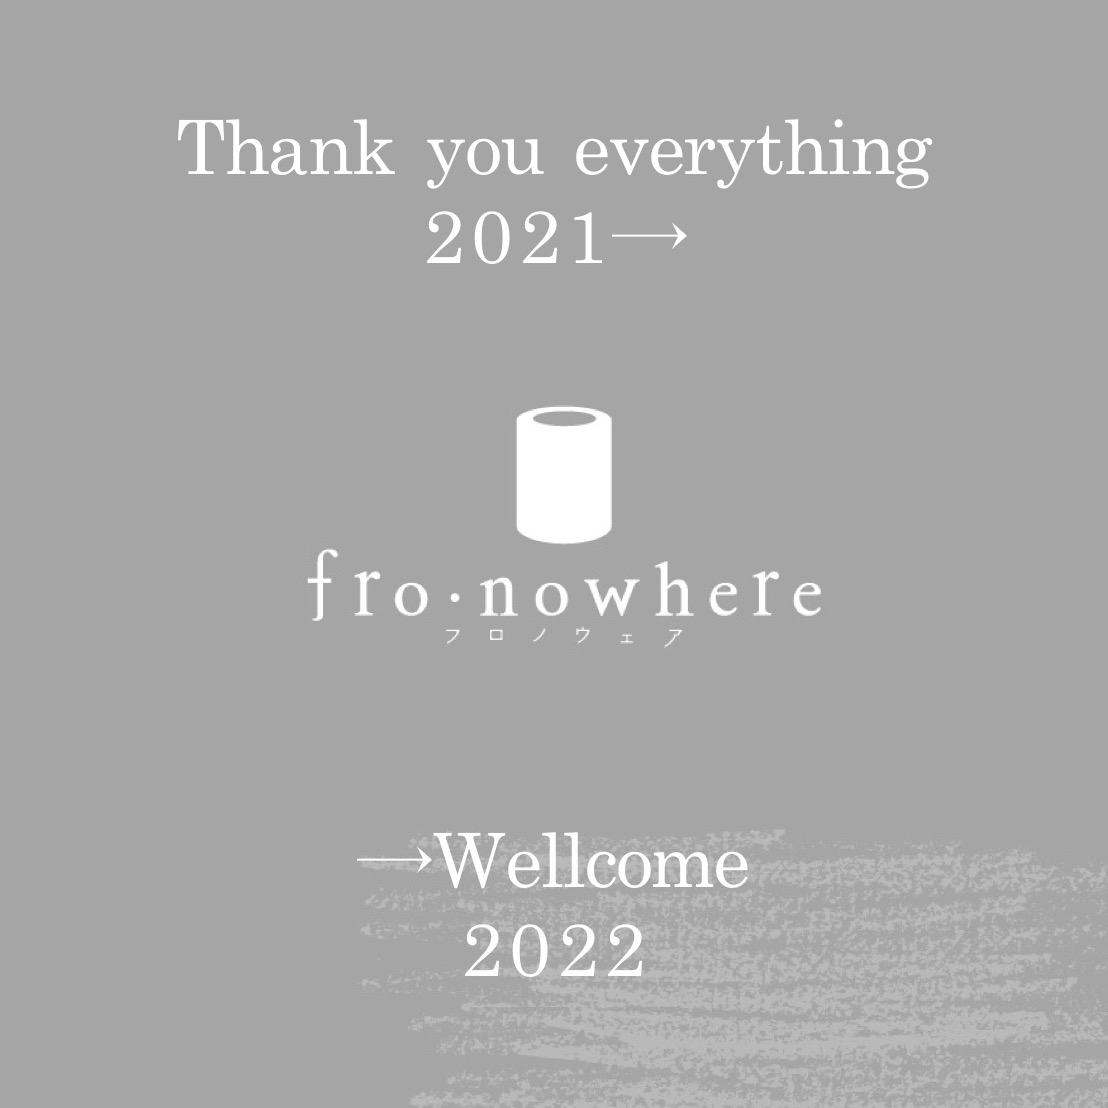 「2021」→「2022」